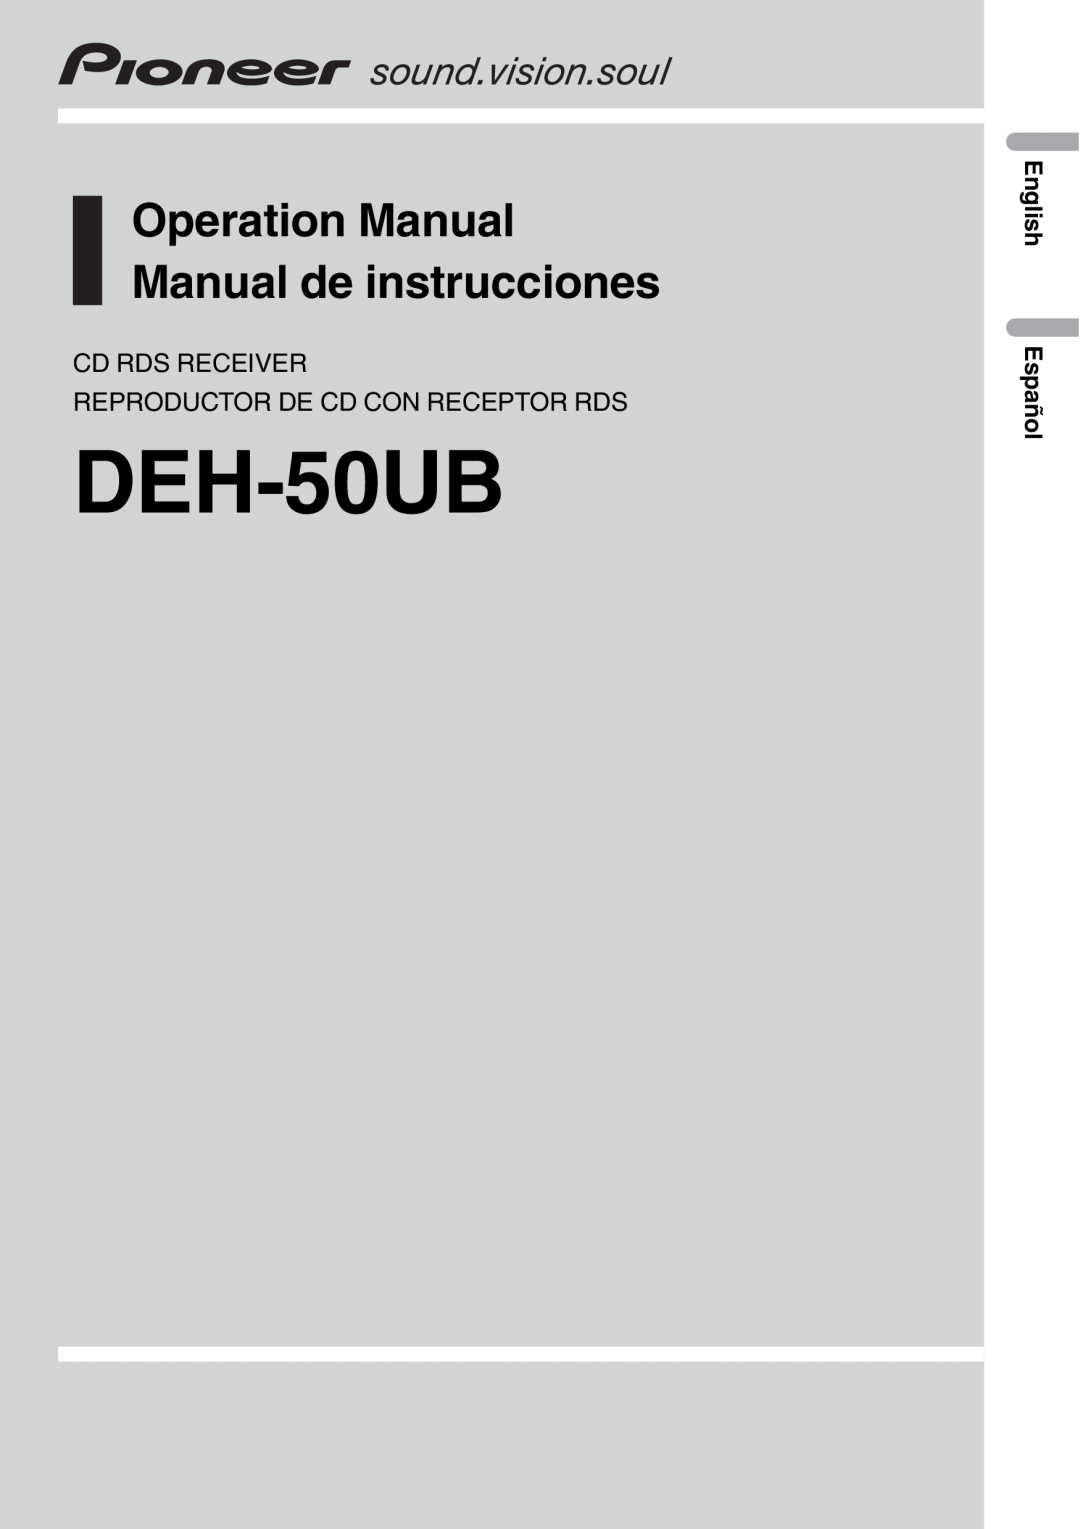 Pioneer DEH-50UB operation manual Cd Rds Receiver, Reproductor De Cd Con Receptor Rds, English Español 